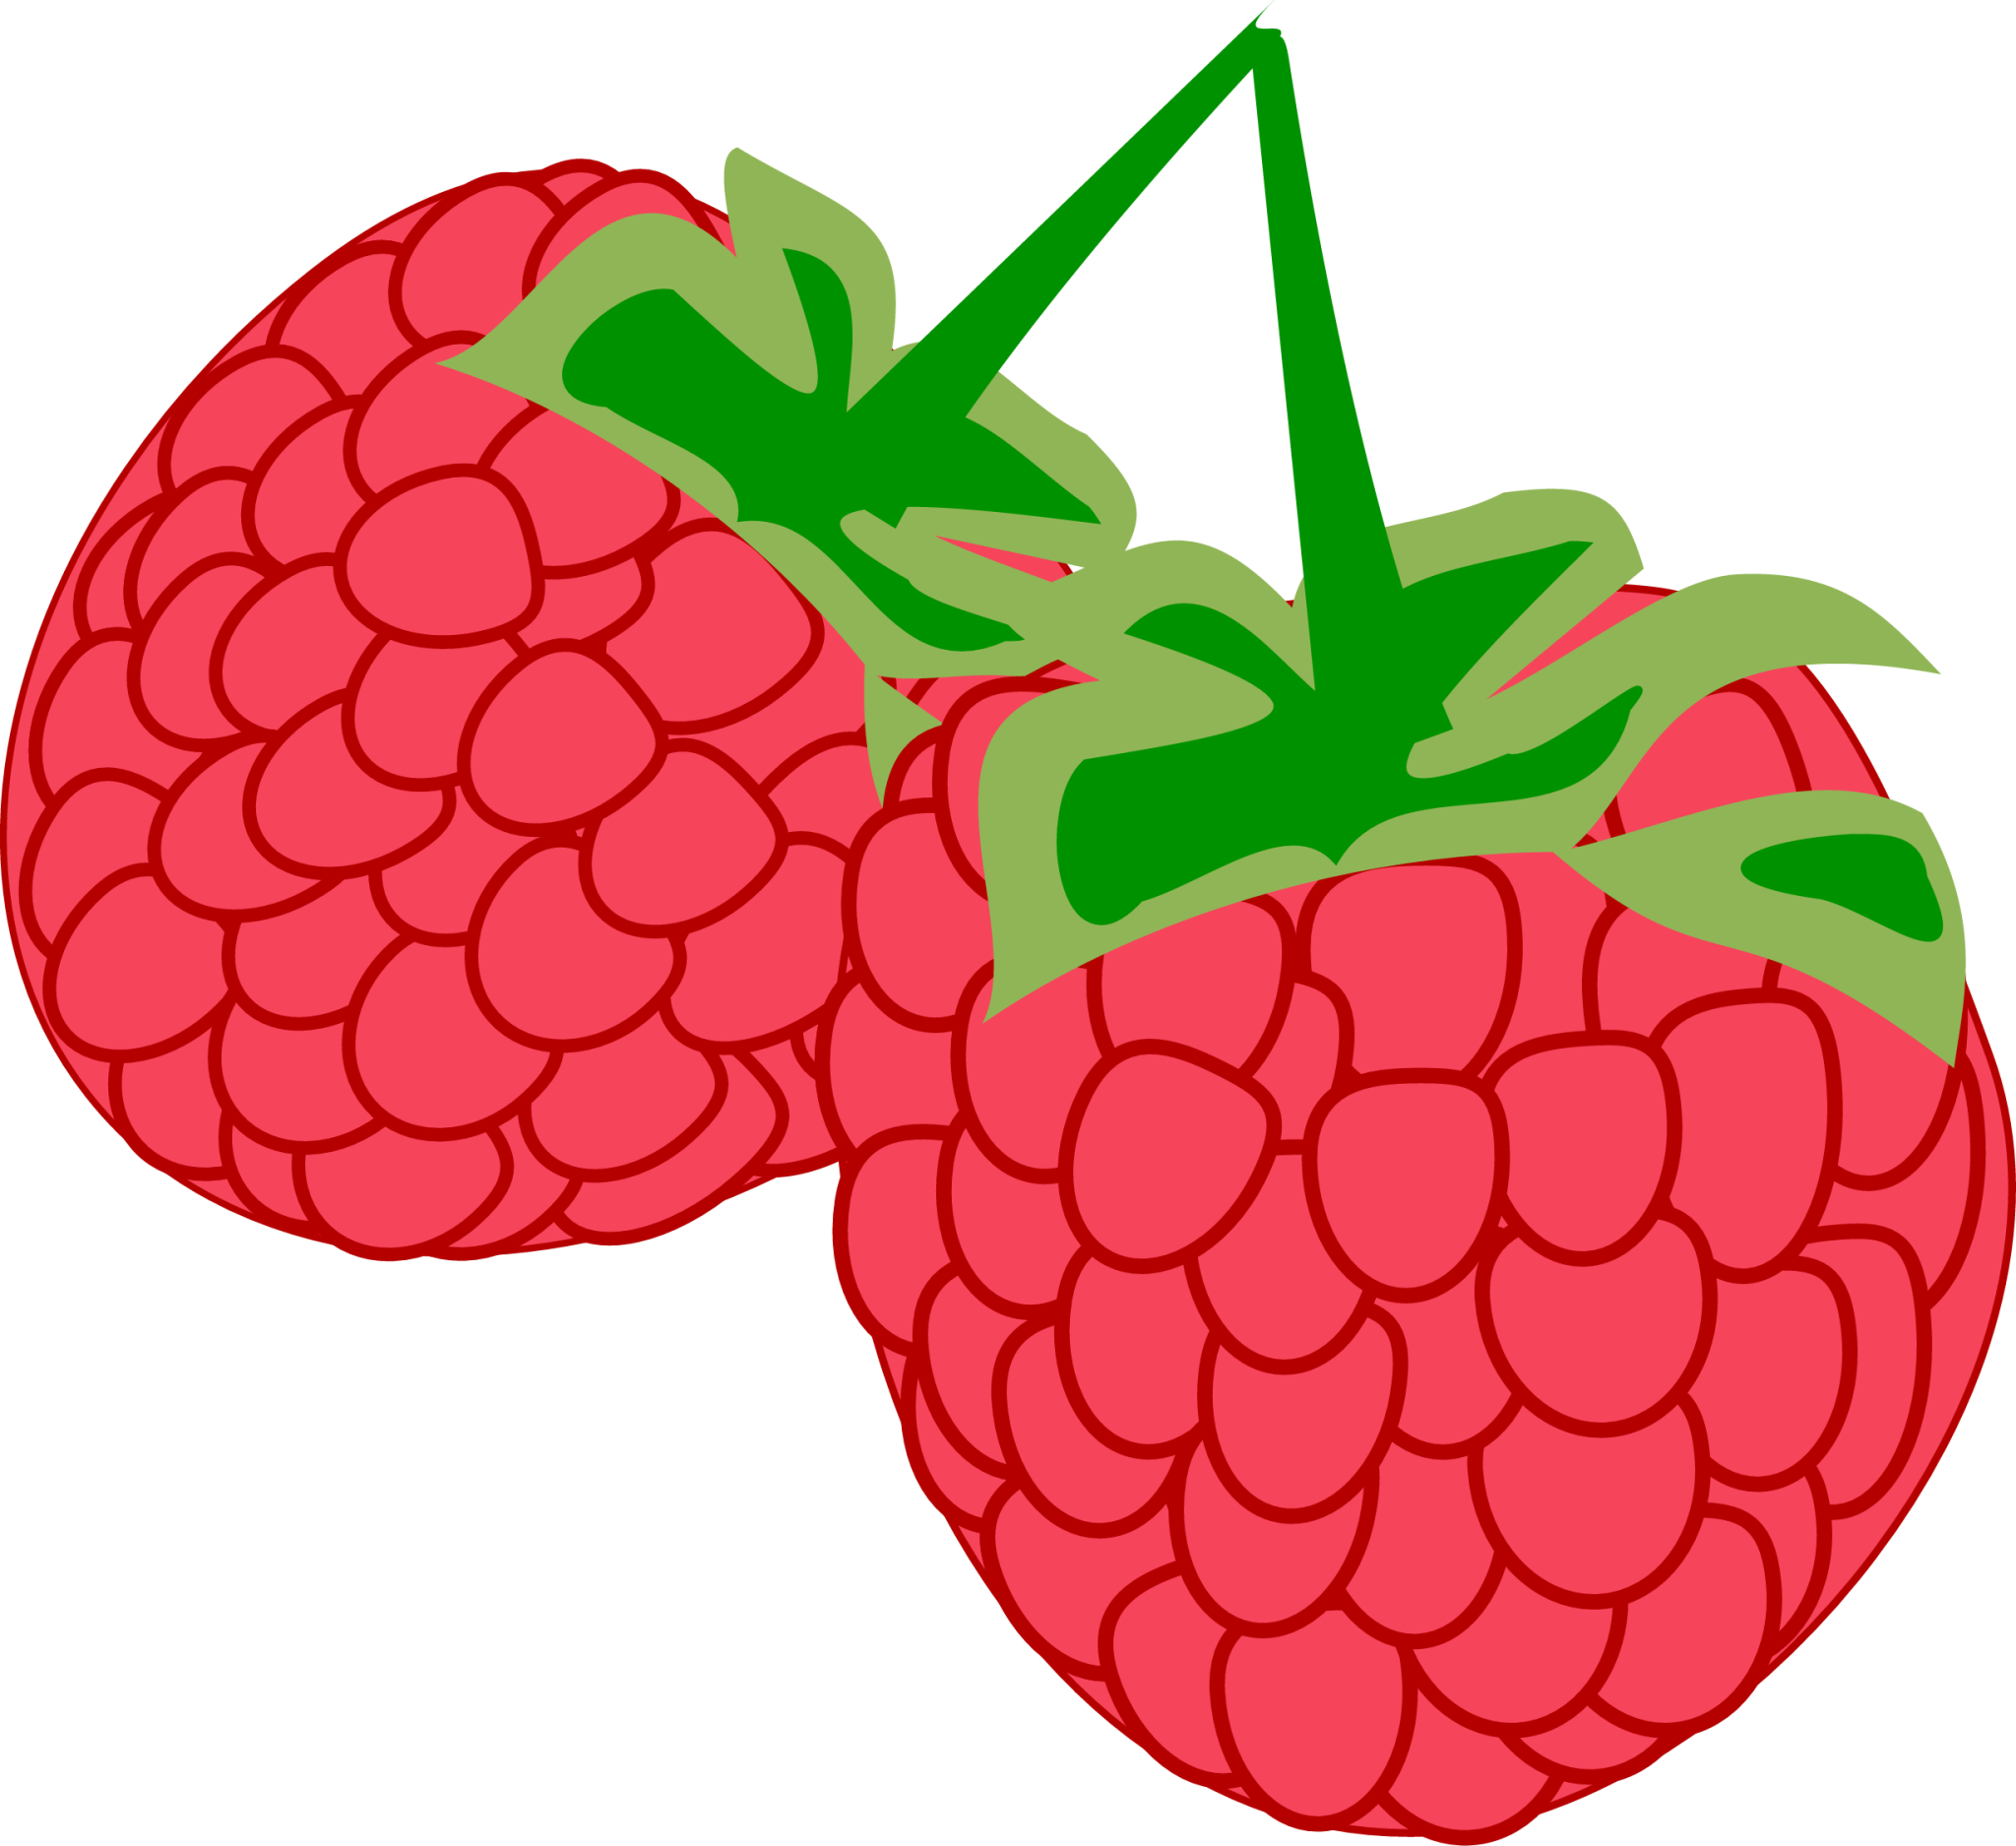 raspberries icon